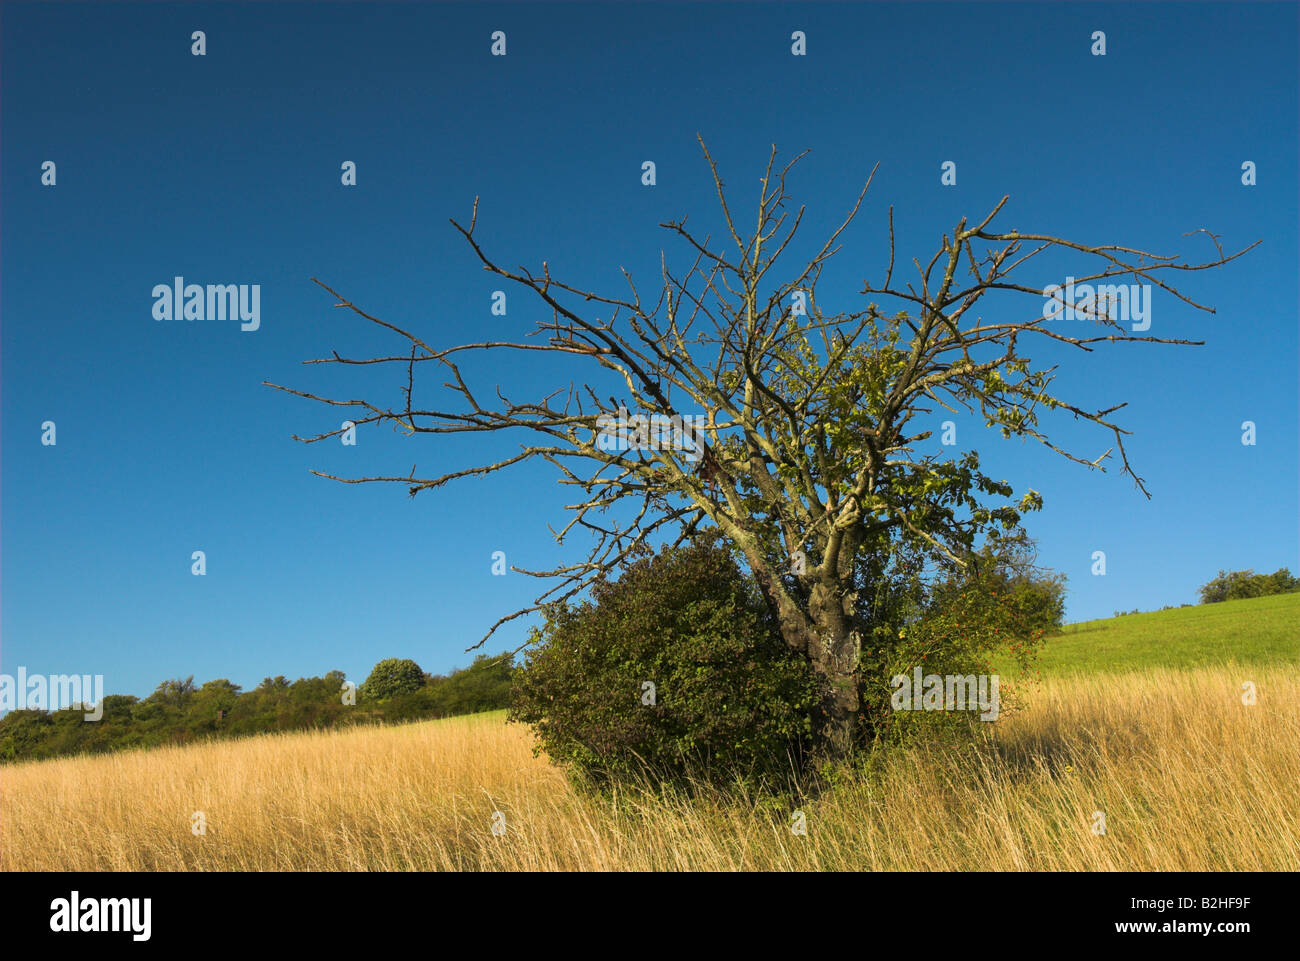 Legno morto albero morto coarse impurità legnose paesaggio di campagna scenario Foto Stock